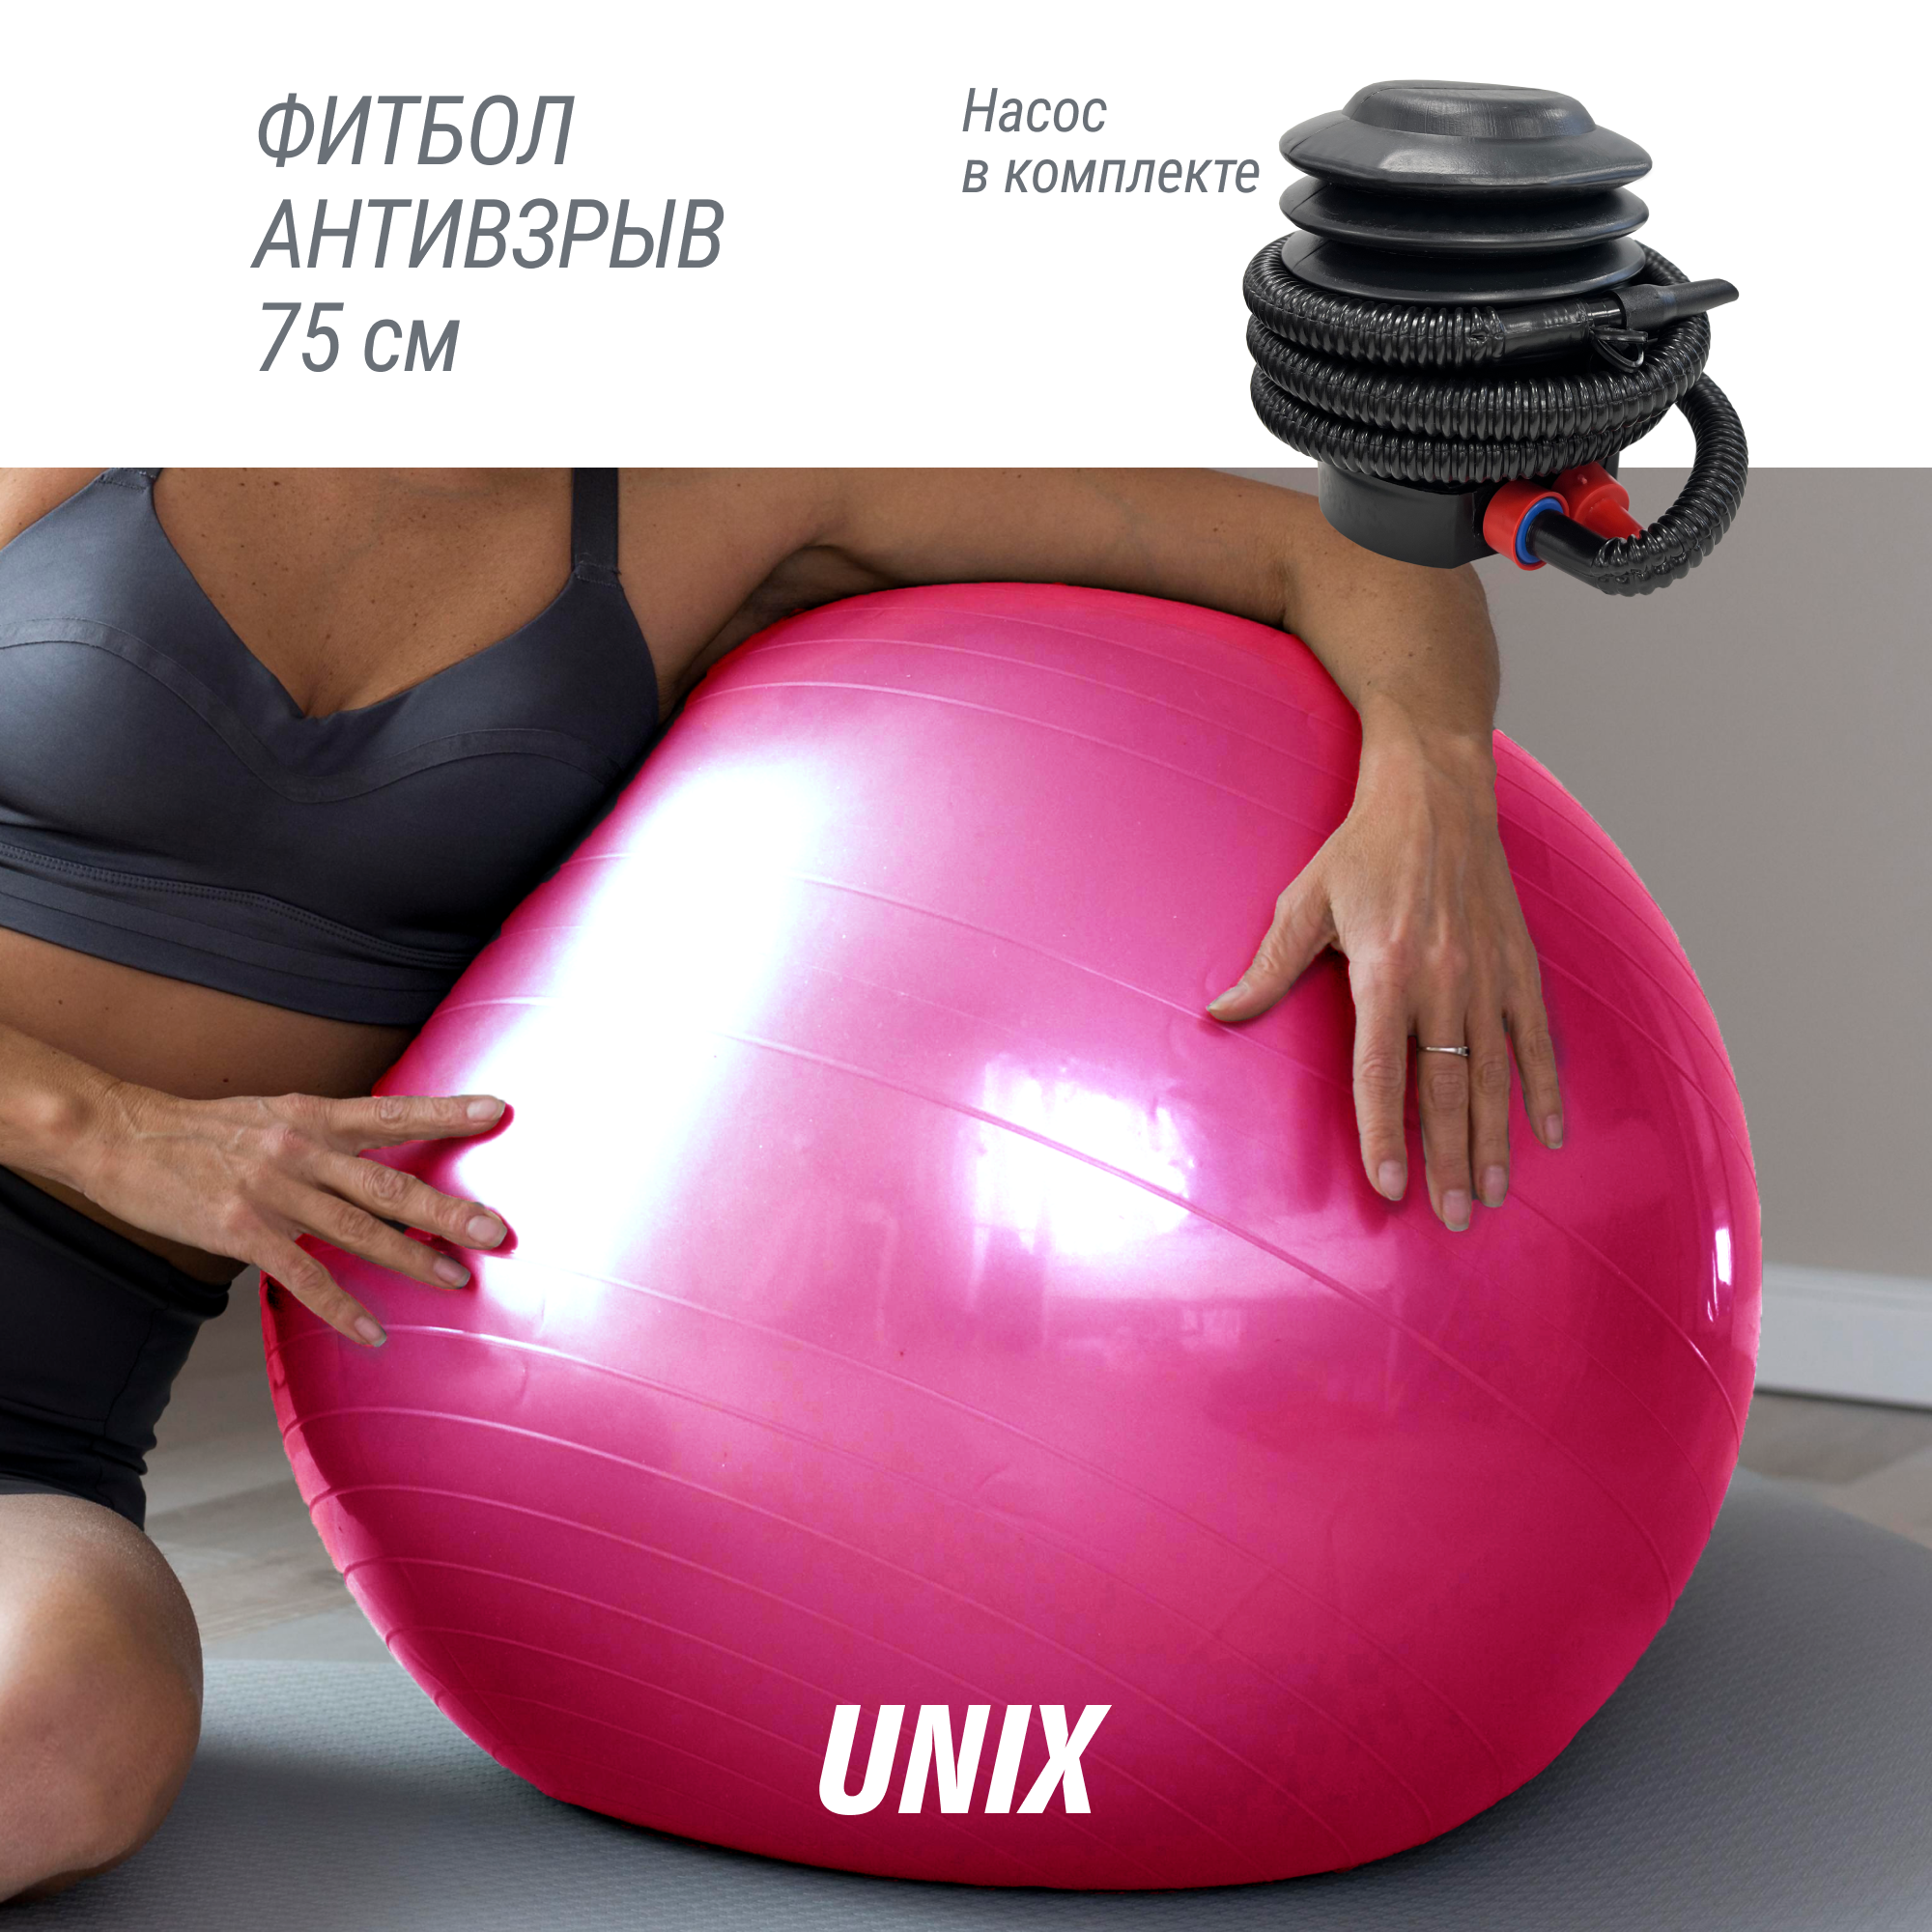 Фитбол с насосом для детей и взрослых UNIX Fit, мяч гимнастический для беременных, антивзрыв 75 см, розовый UNIXFIT